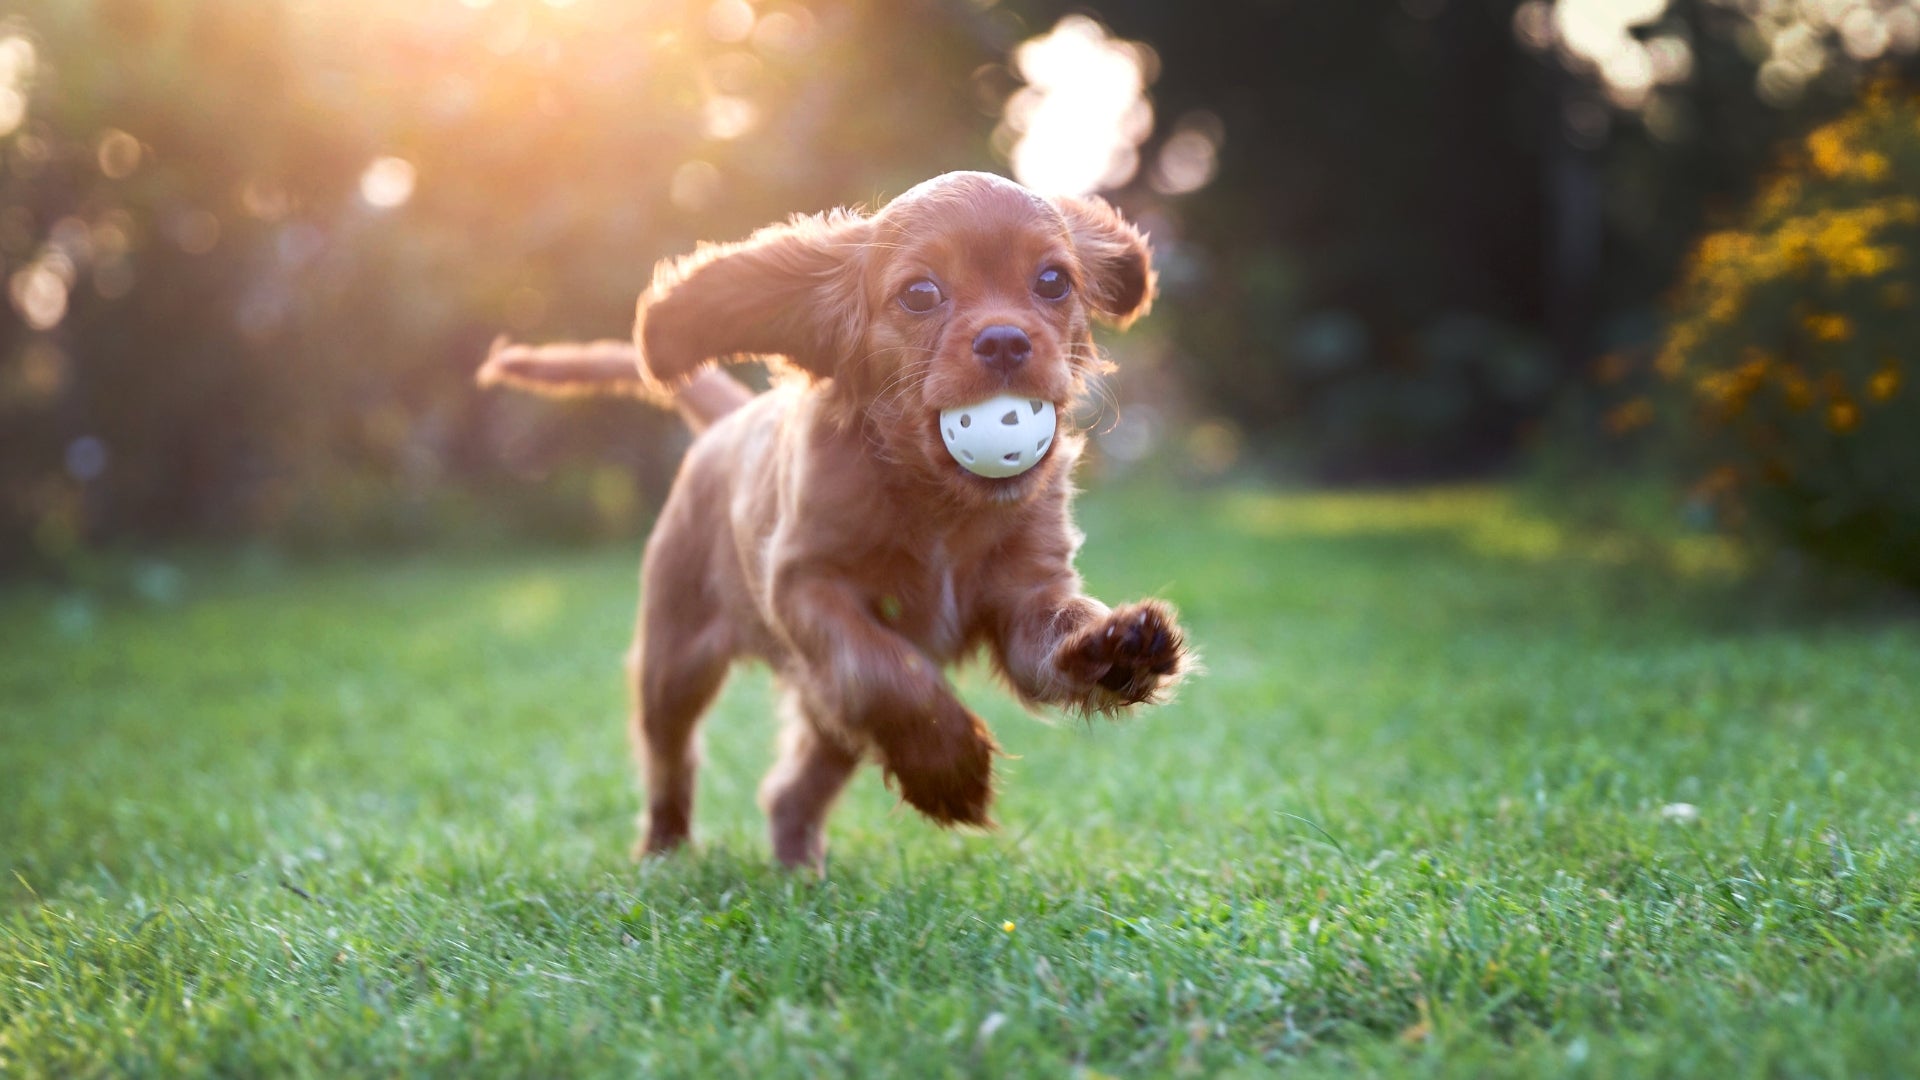 Puppy running through grass with a ball